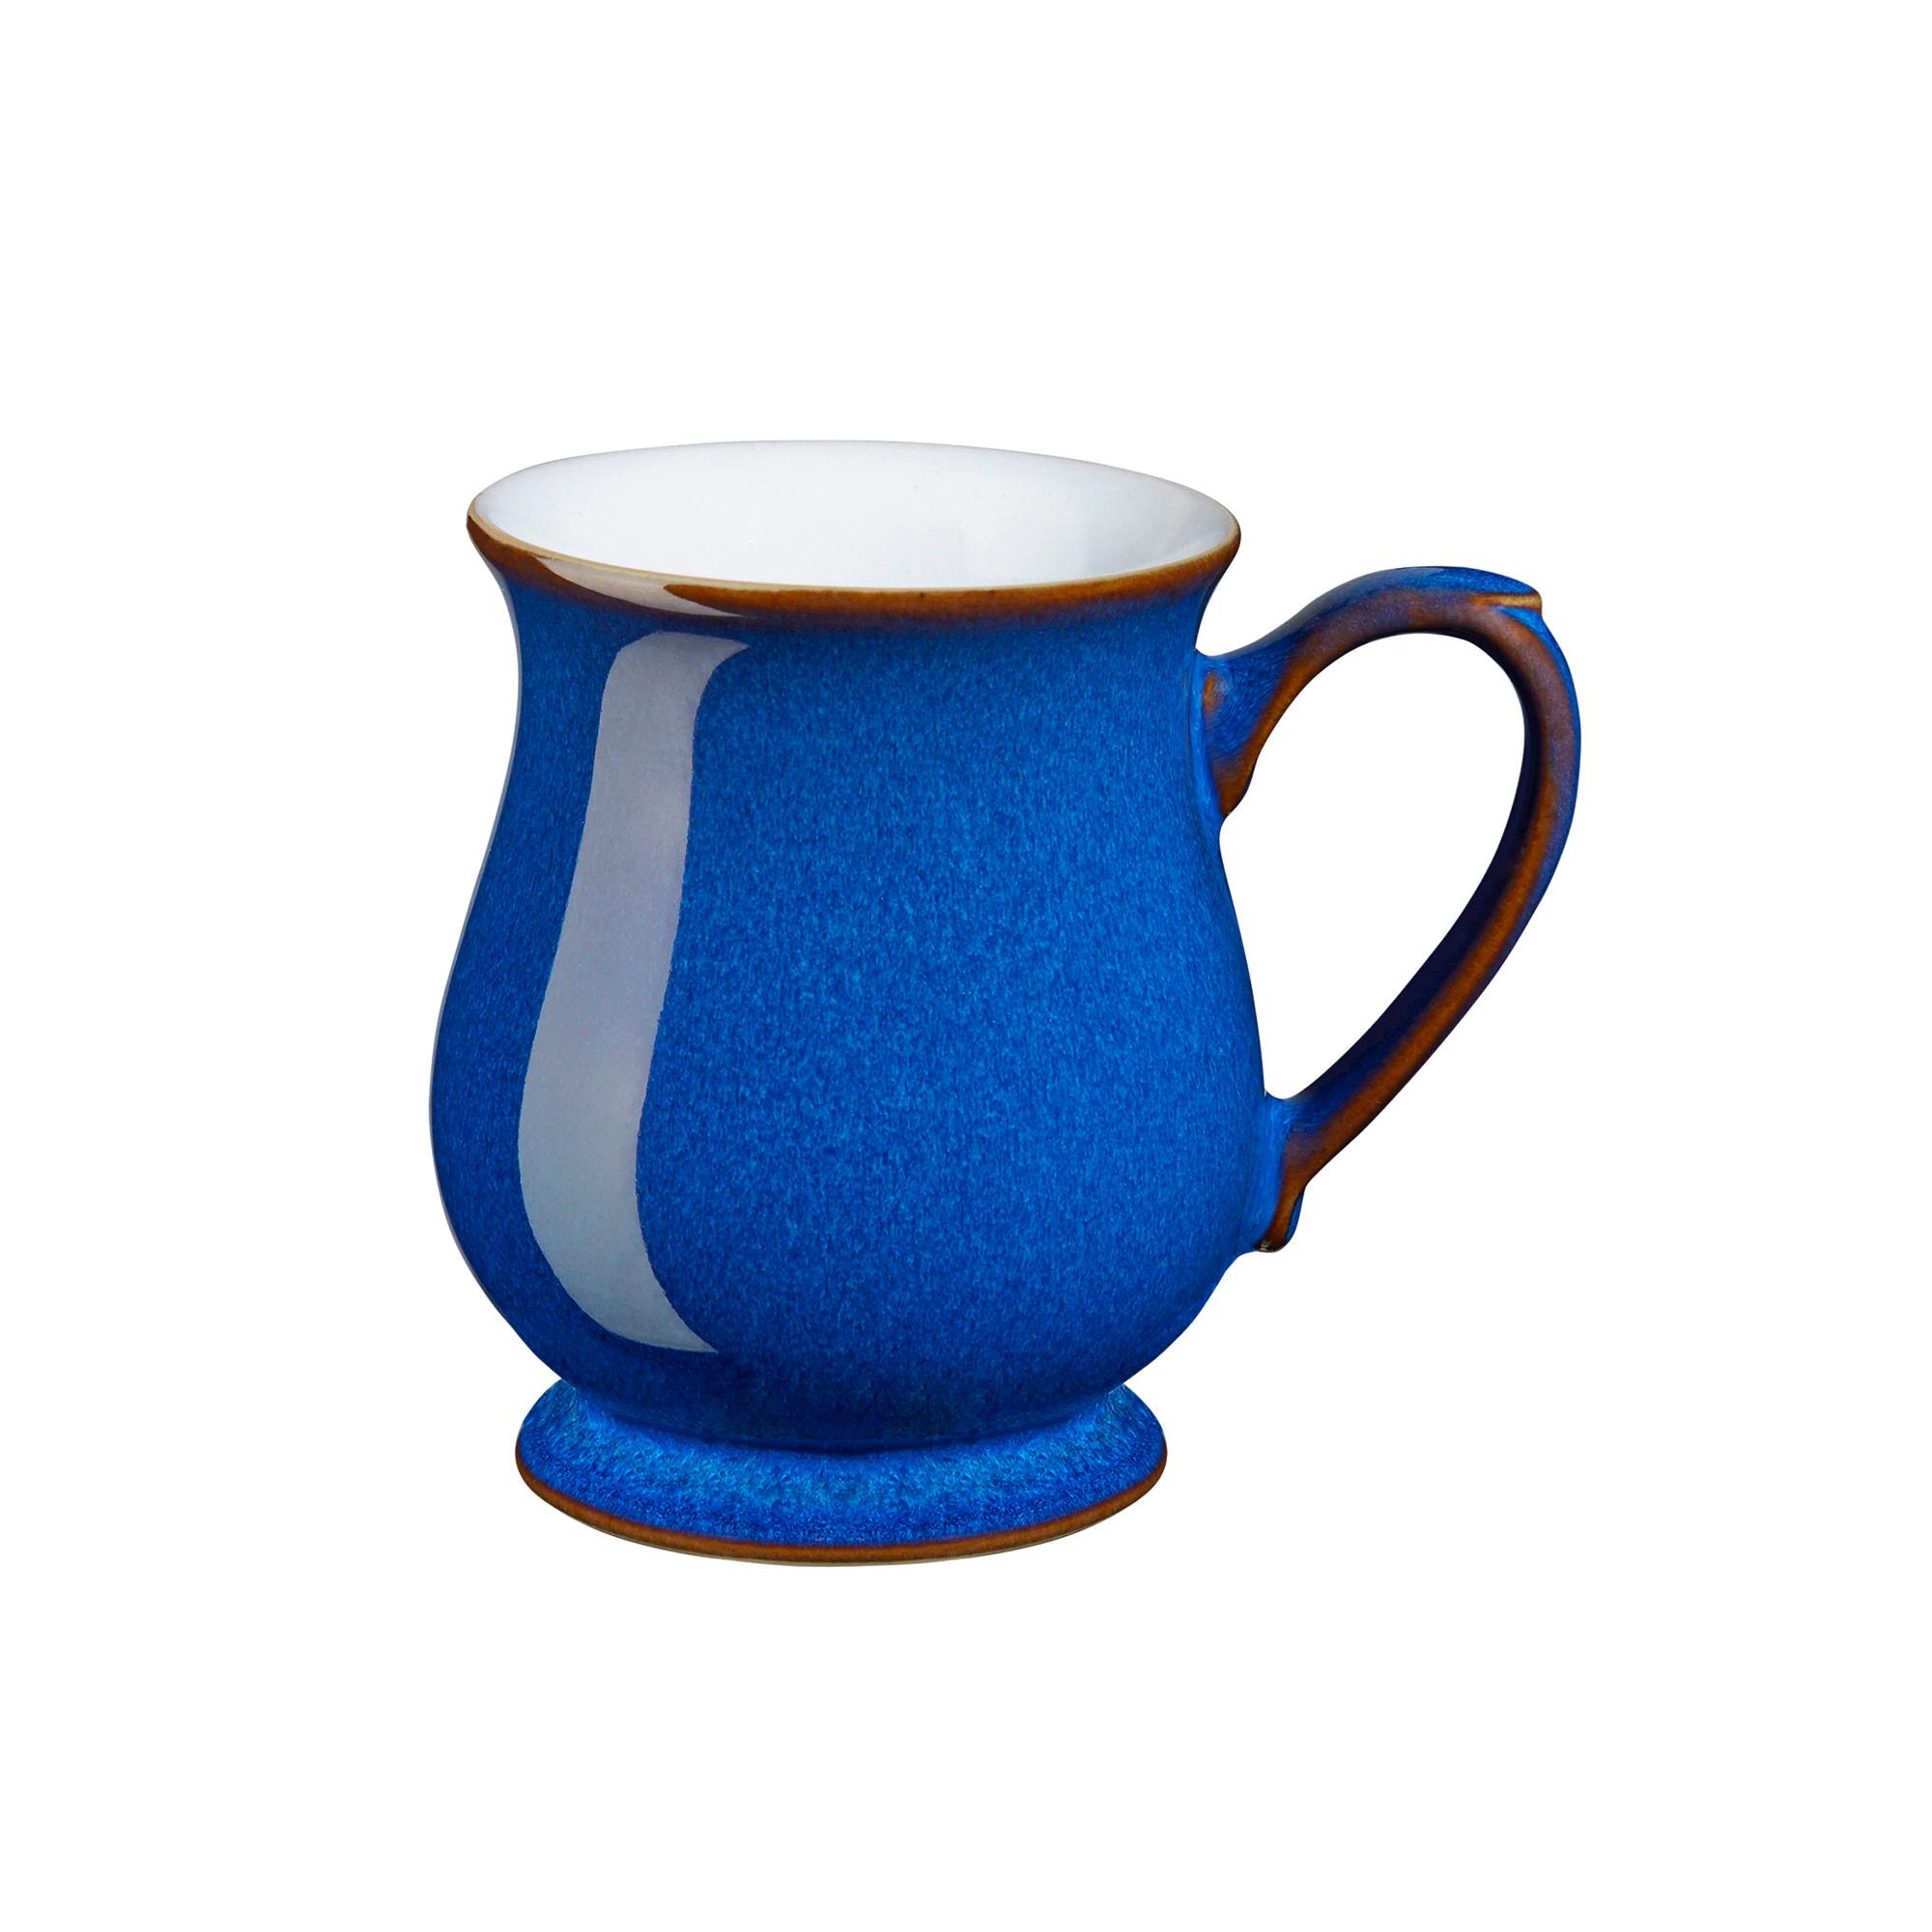 Denby Imperial Blue Craftsman's Mug 300ml Image 1